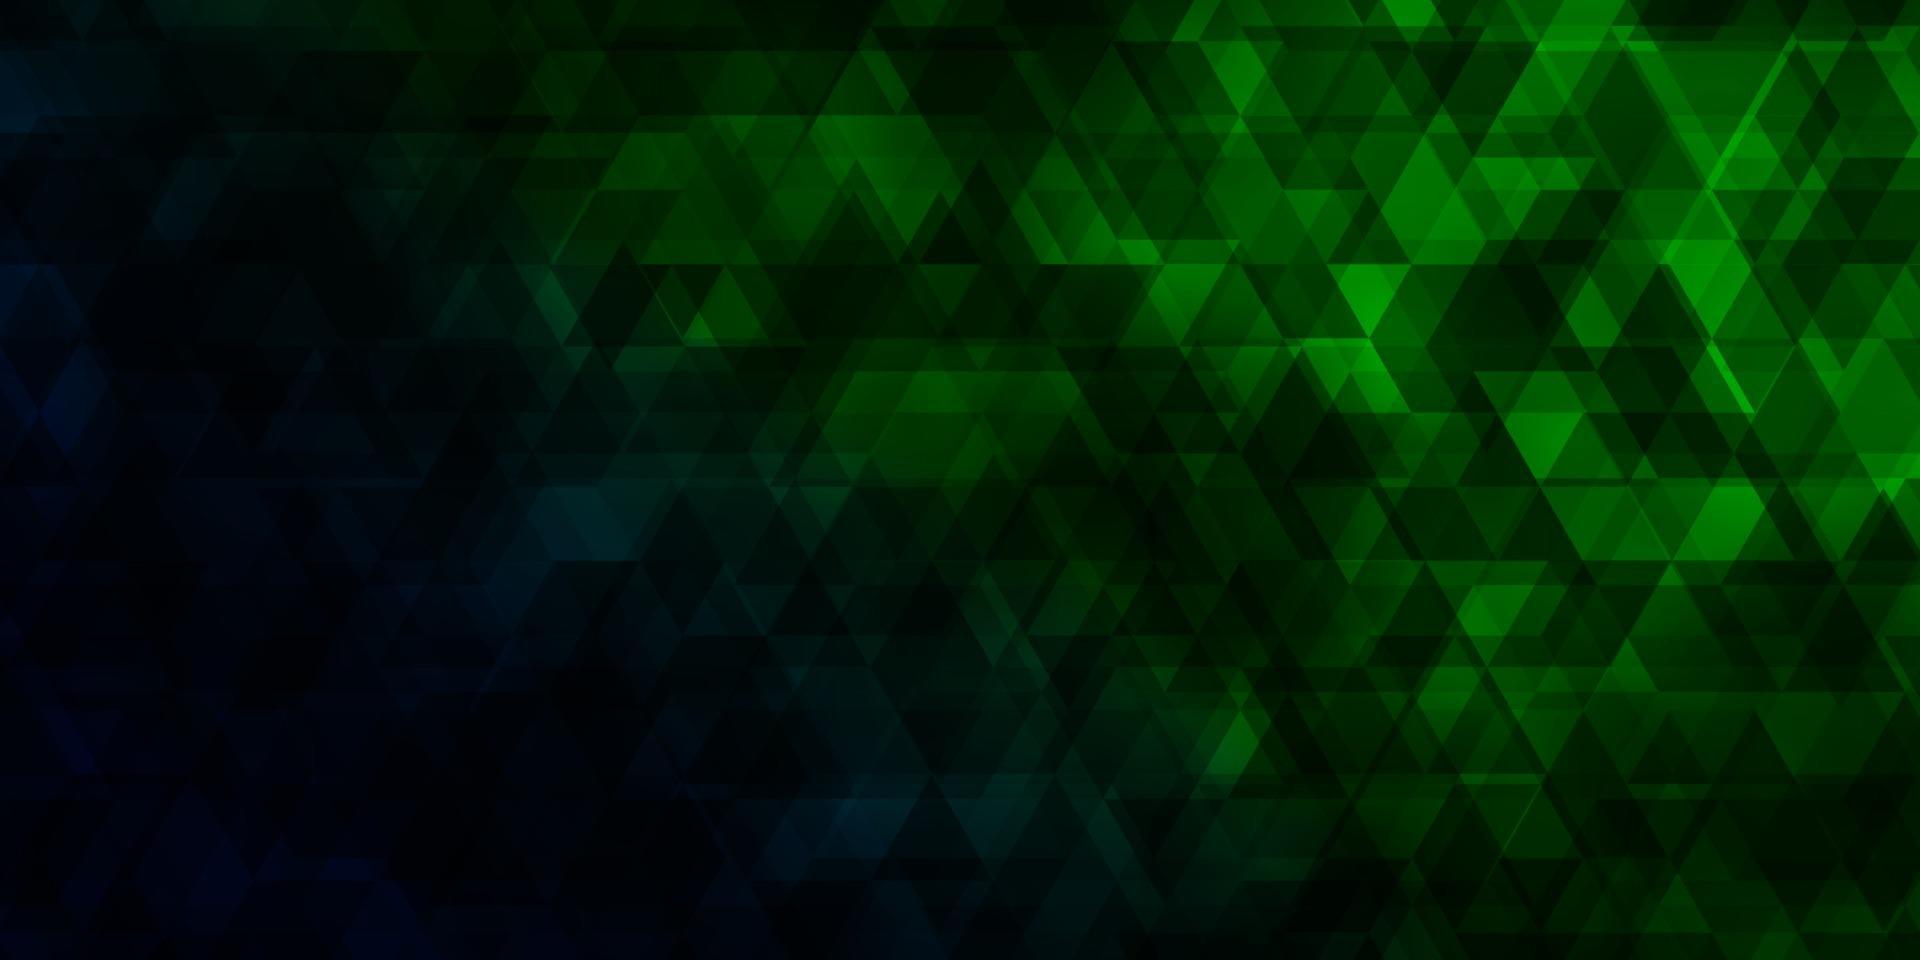 mörkgrön vektormall med linjer, trianglar. vektor